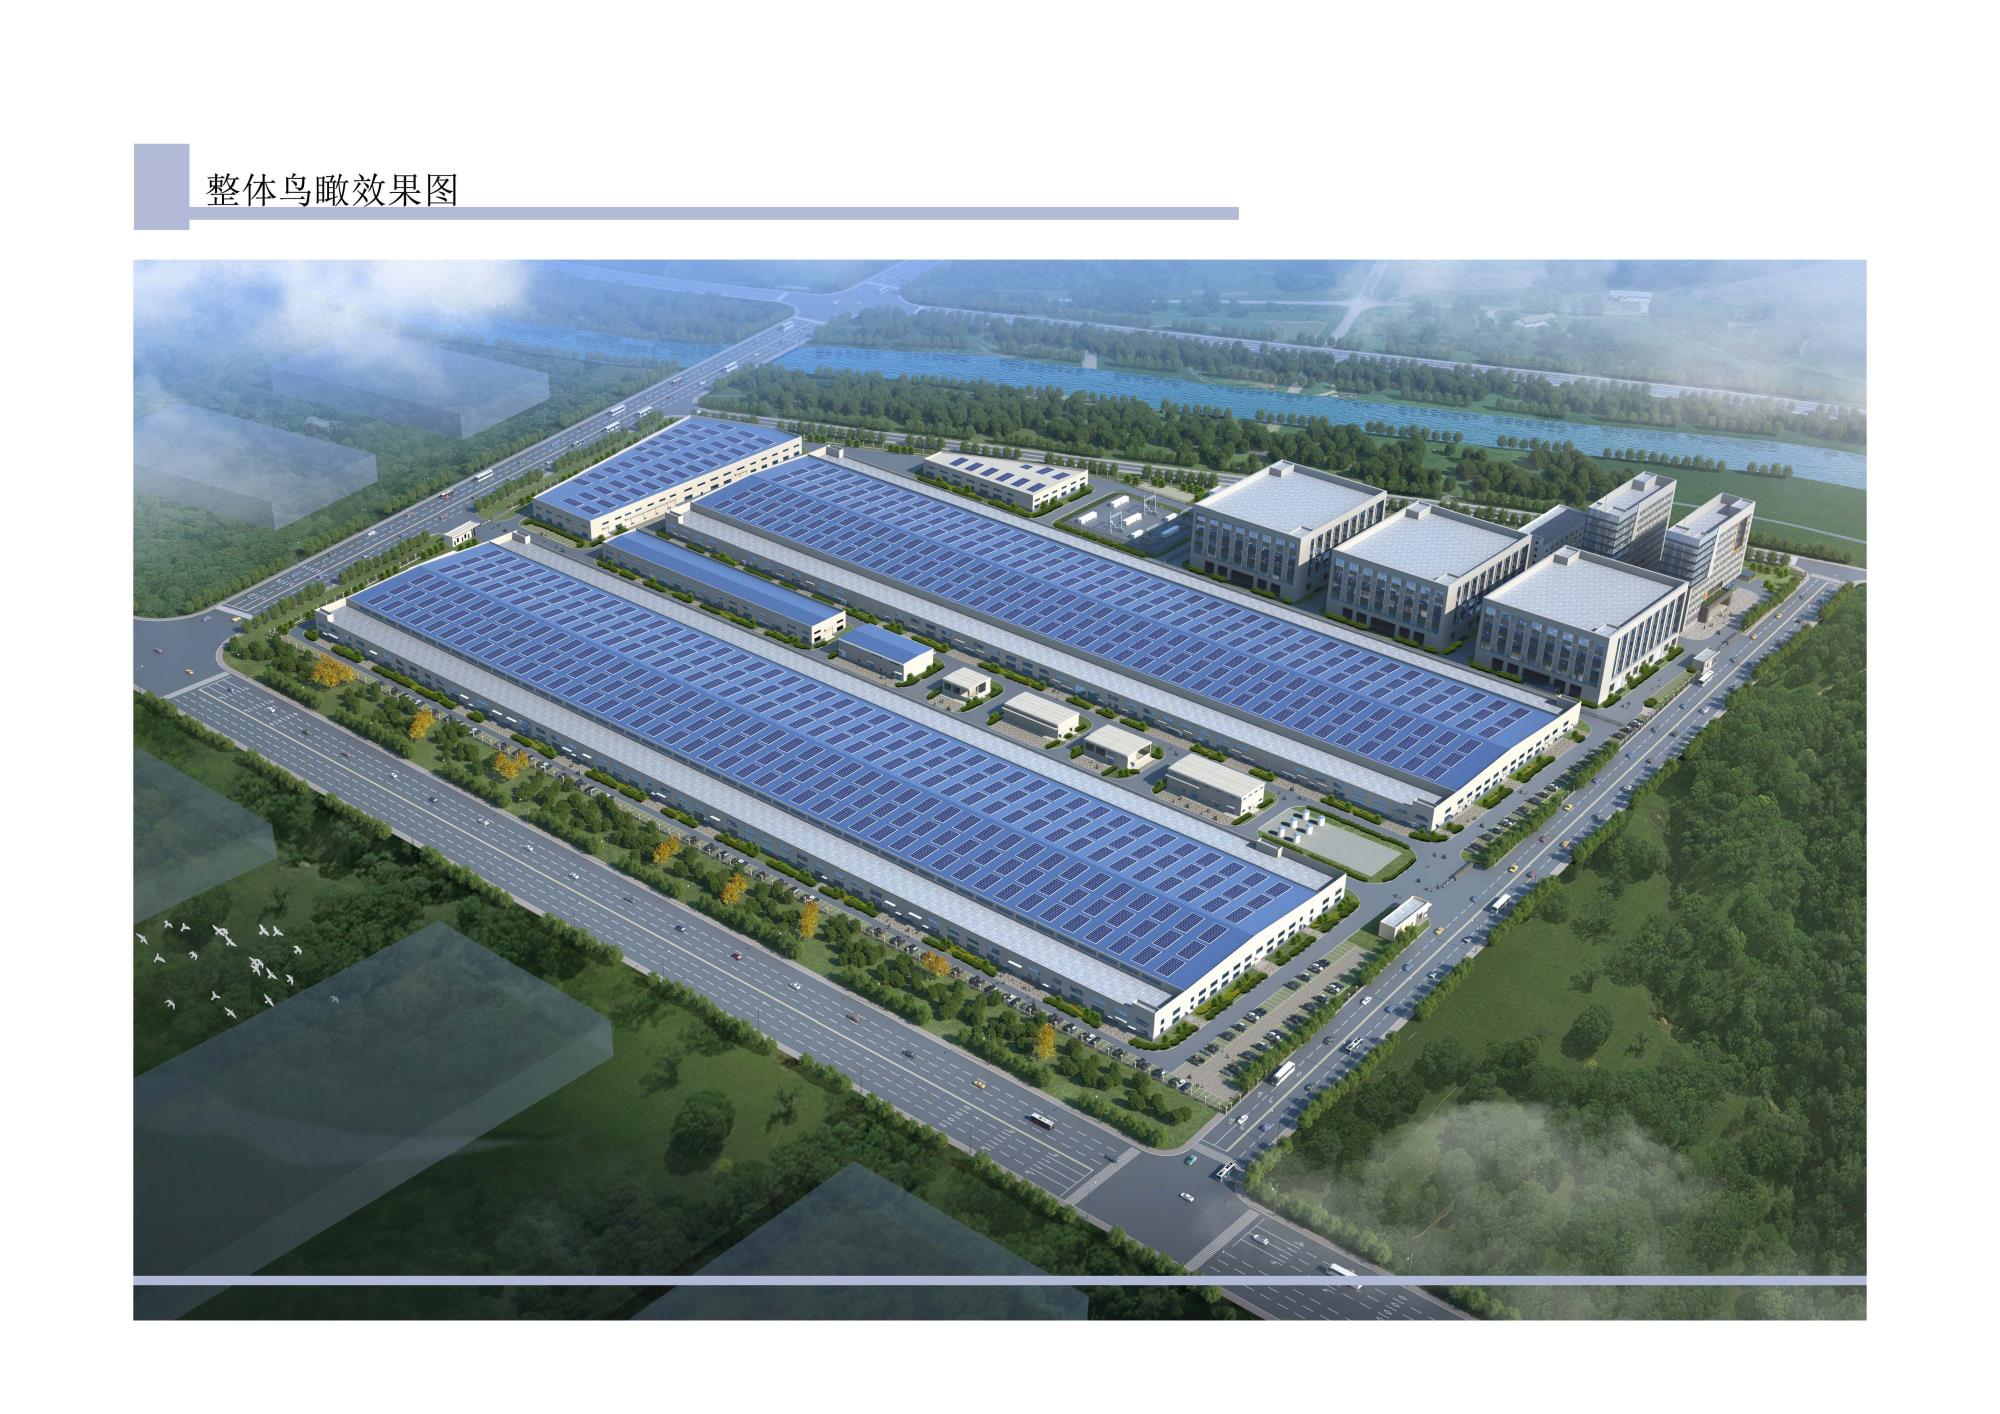 徐州高新技术产业开发区鸿硕建设管理有限公司光伏电池研发基地基础设施项目